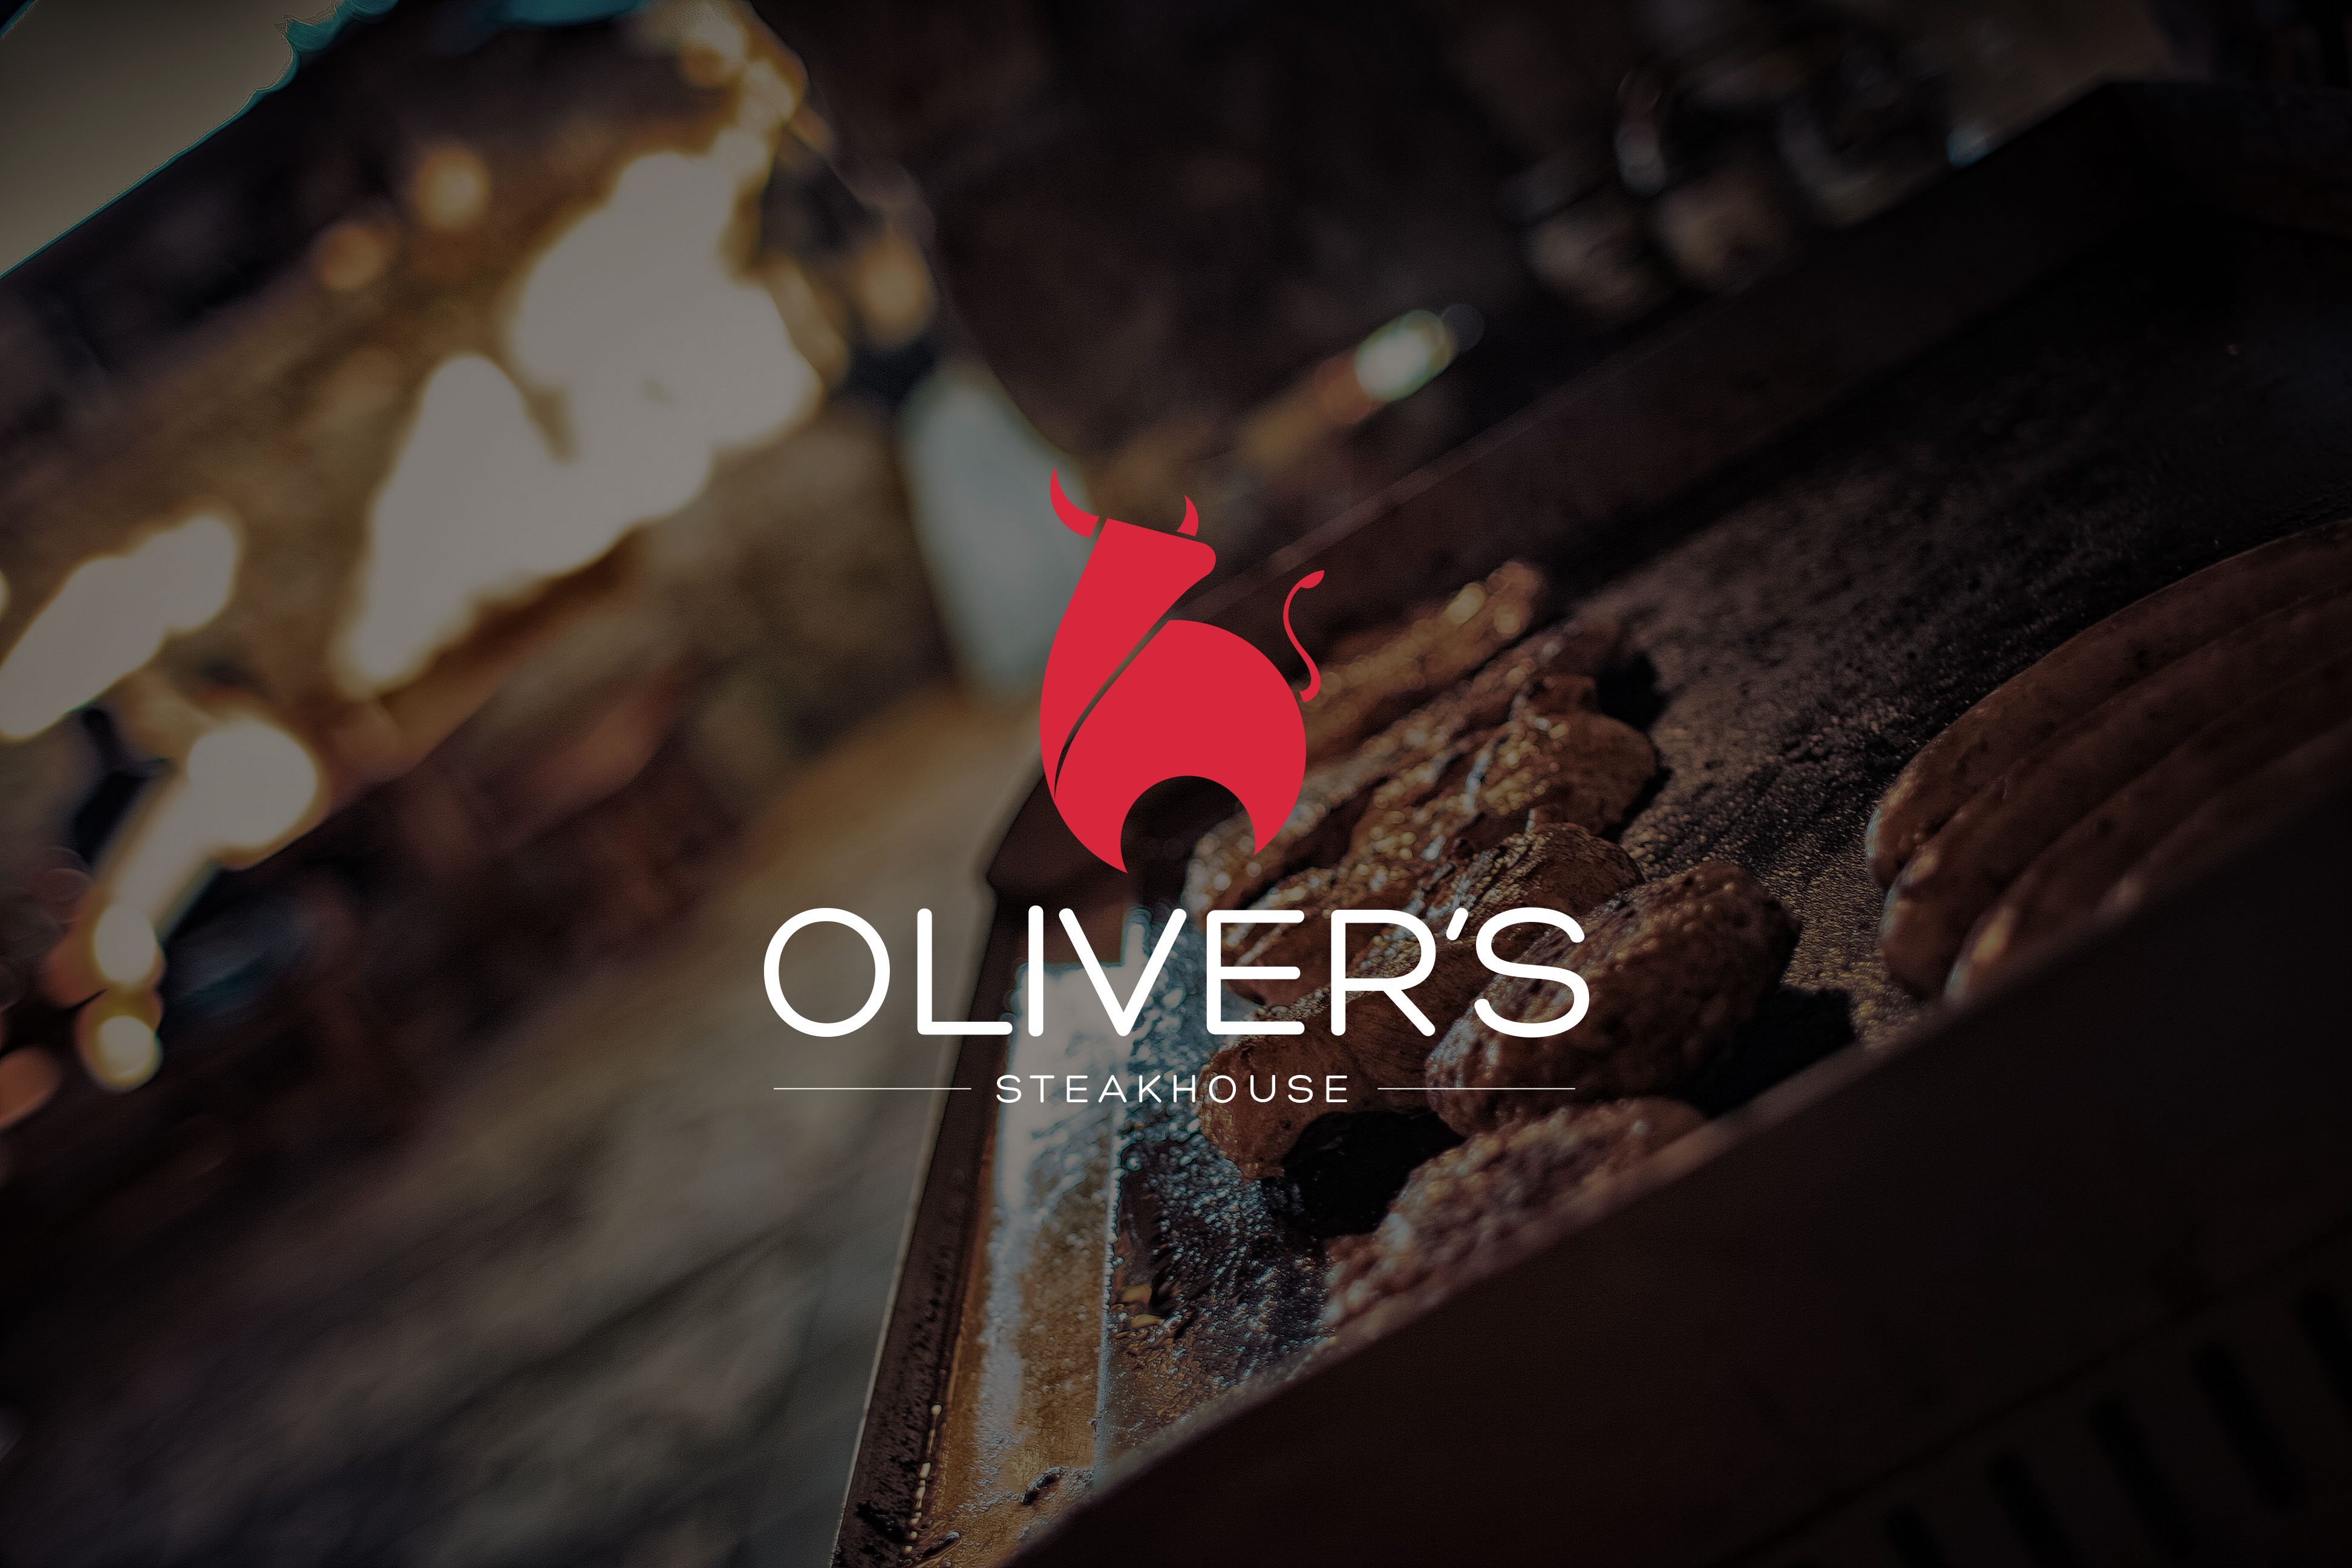 Oliver's steakhouse logo